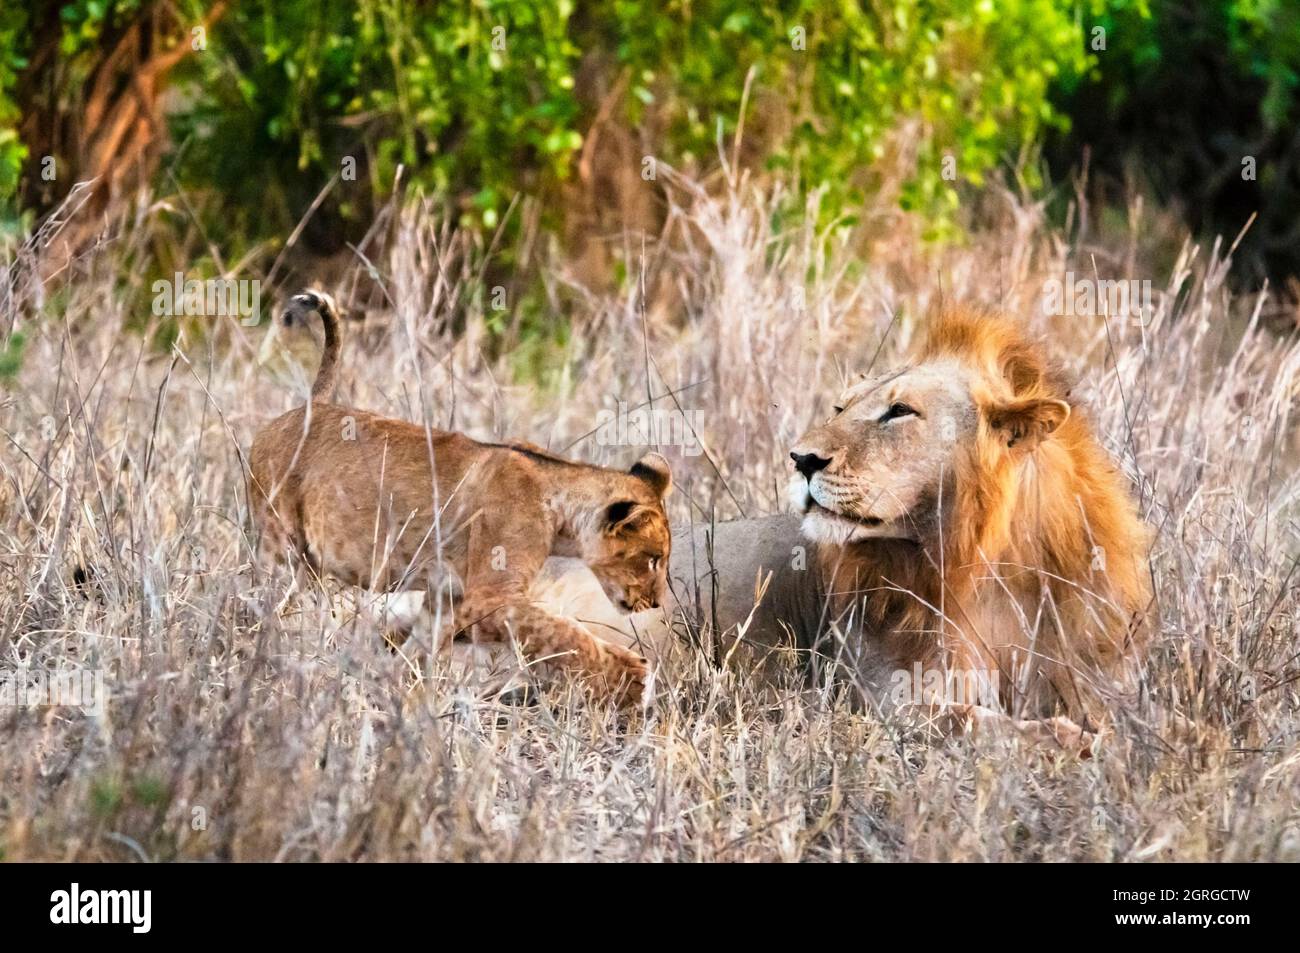 Kenya, parc national de Tsavo West, un lion mâle (Panthera leo) dans la brousse et son cub Banque D'Images